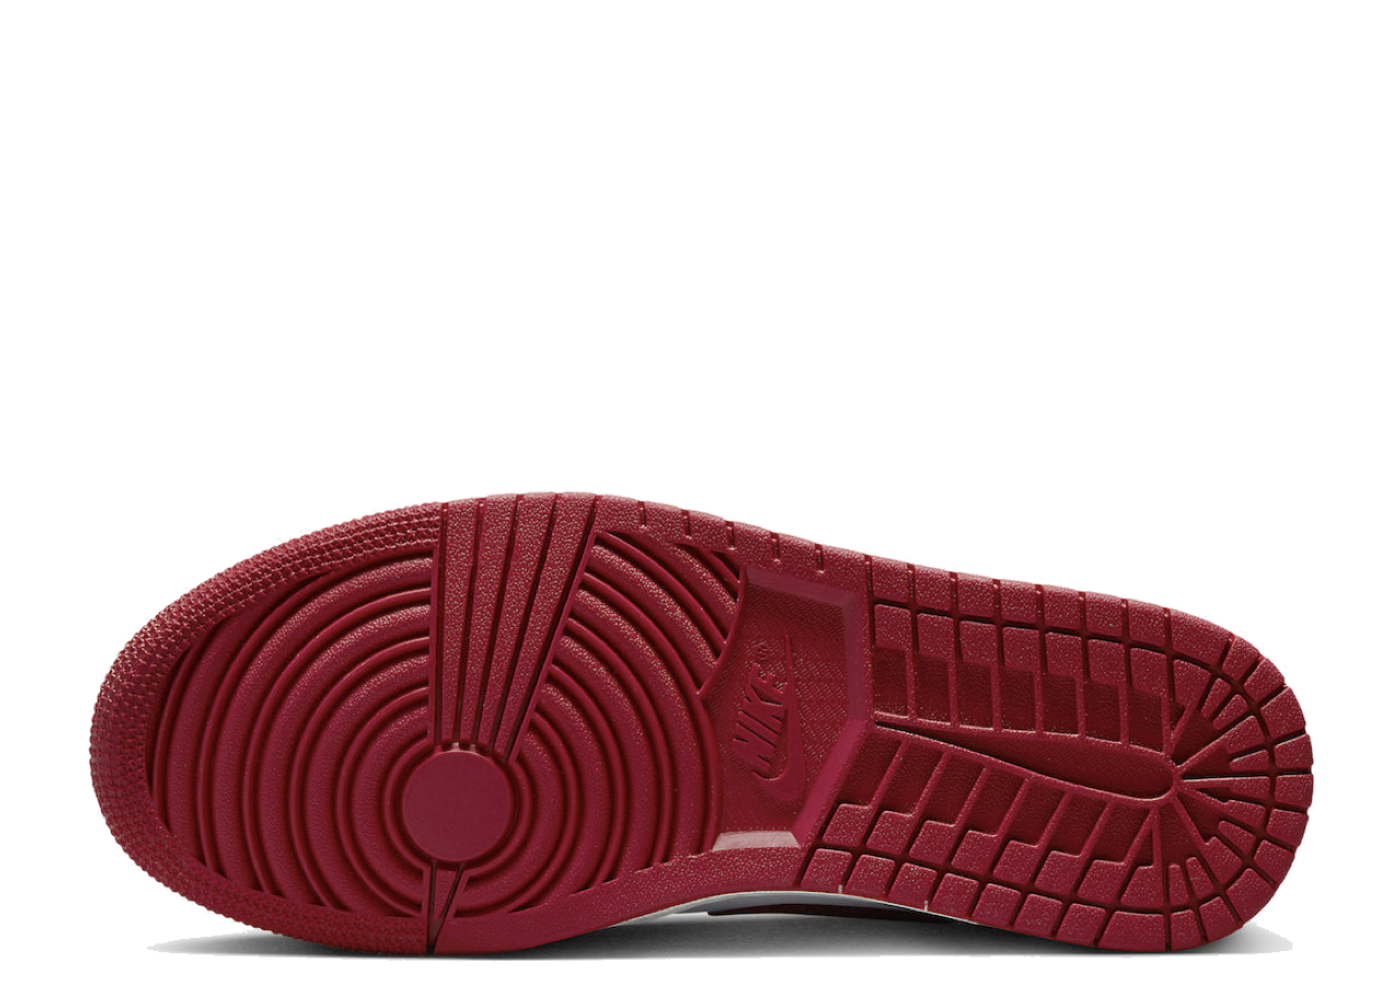 Beli Air Jordan 1 Low Reverse Black Toe (W) | Kick Avenue